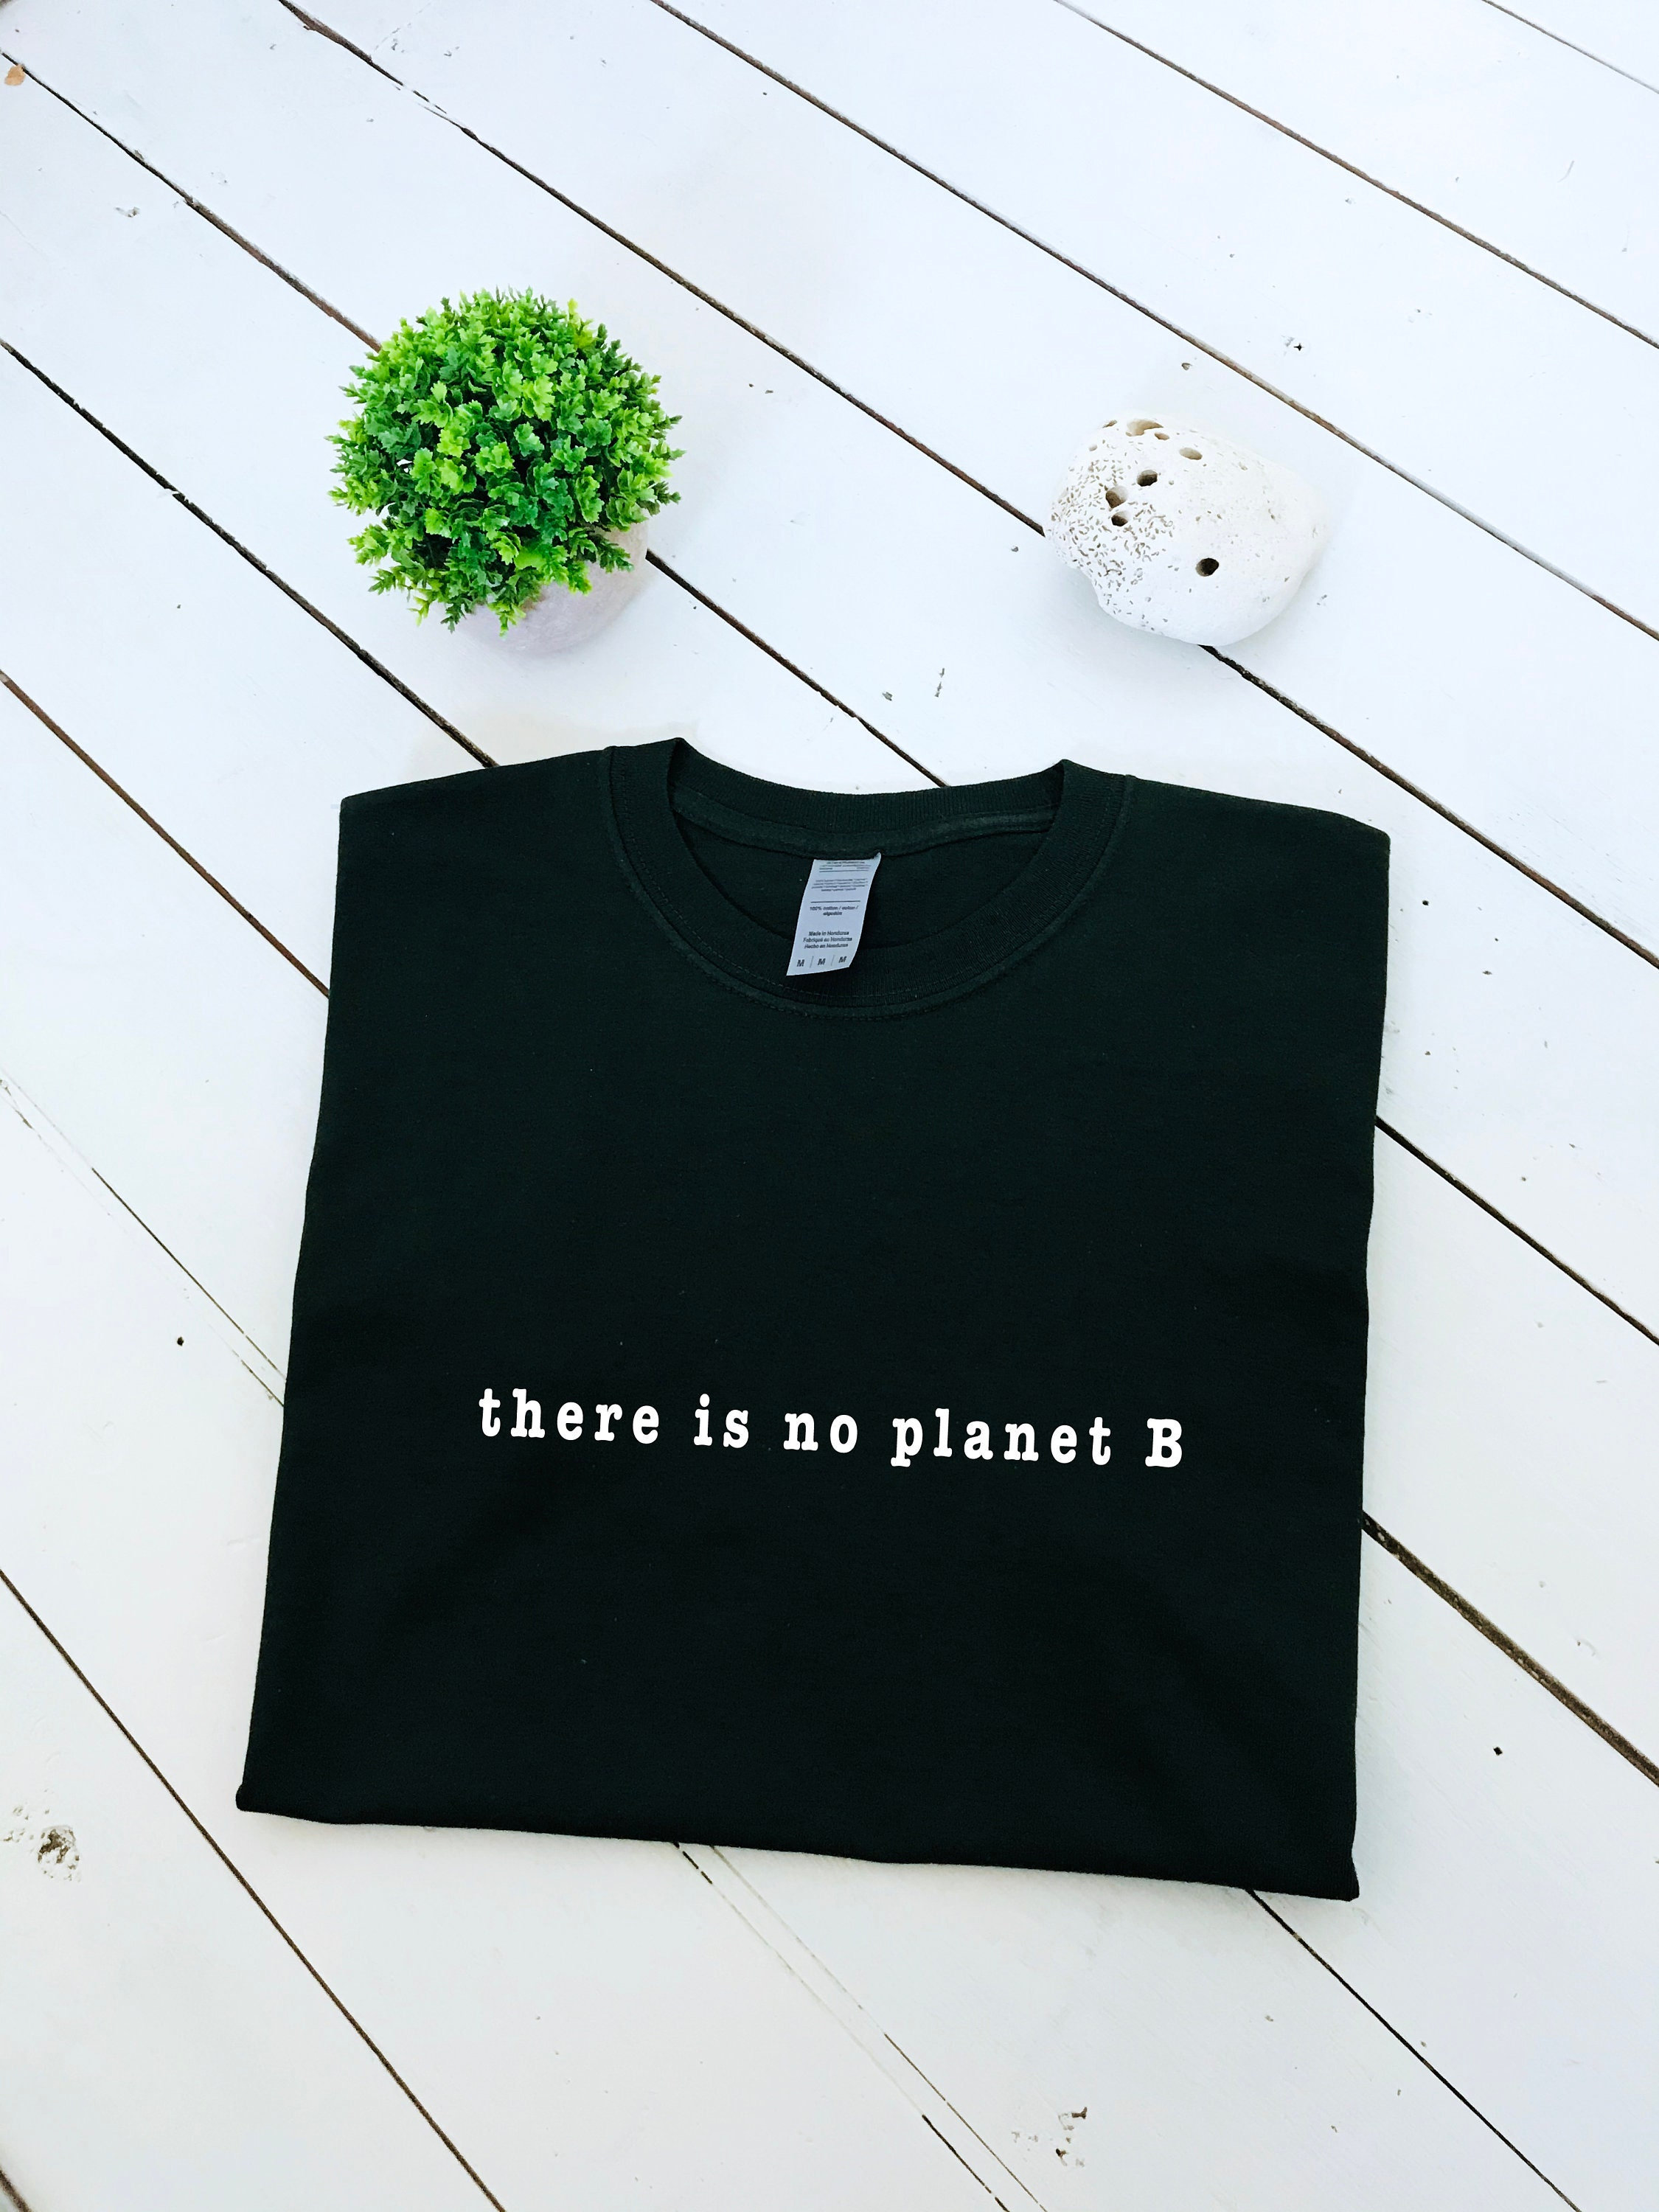 Plaske Formindske hjælp There is No Planet B Slogan Printed T-shirt Multiple Sizes - Etsy